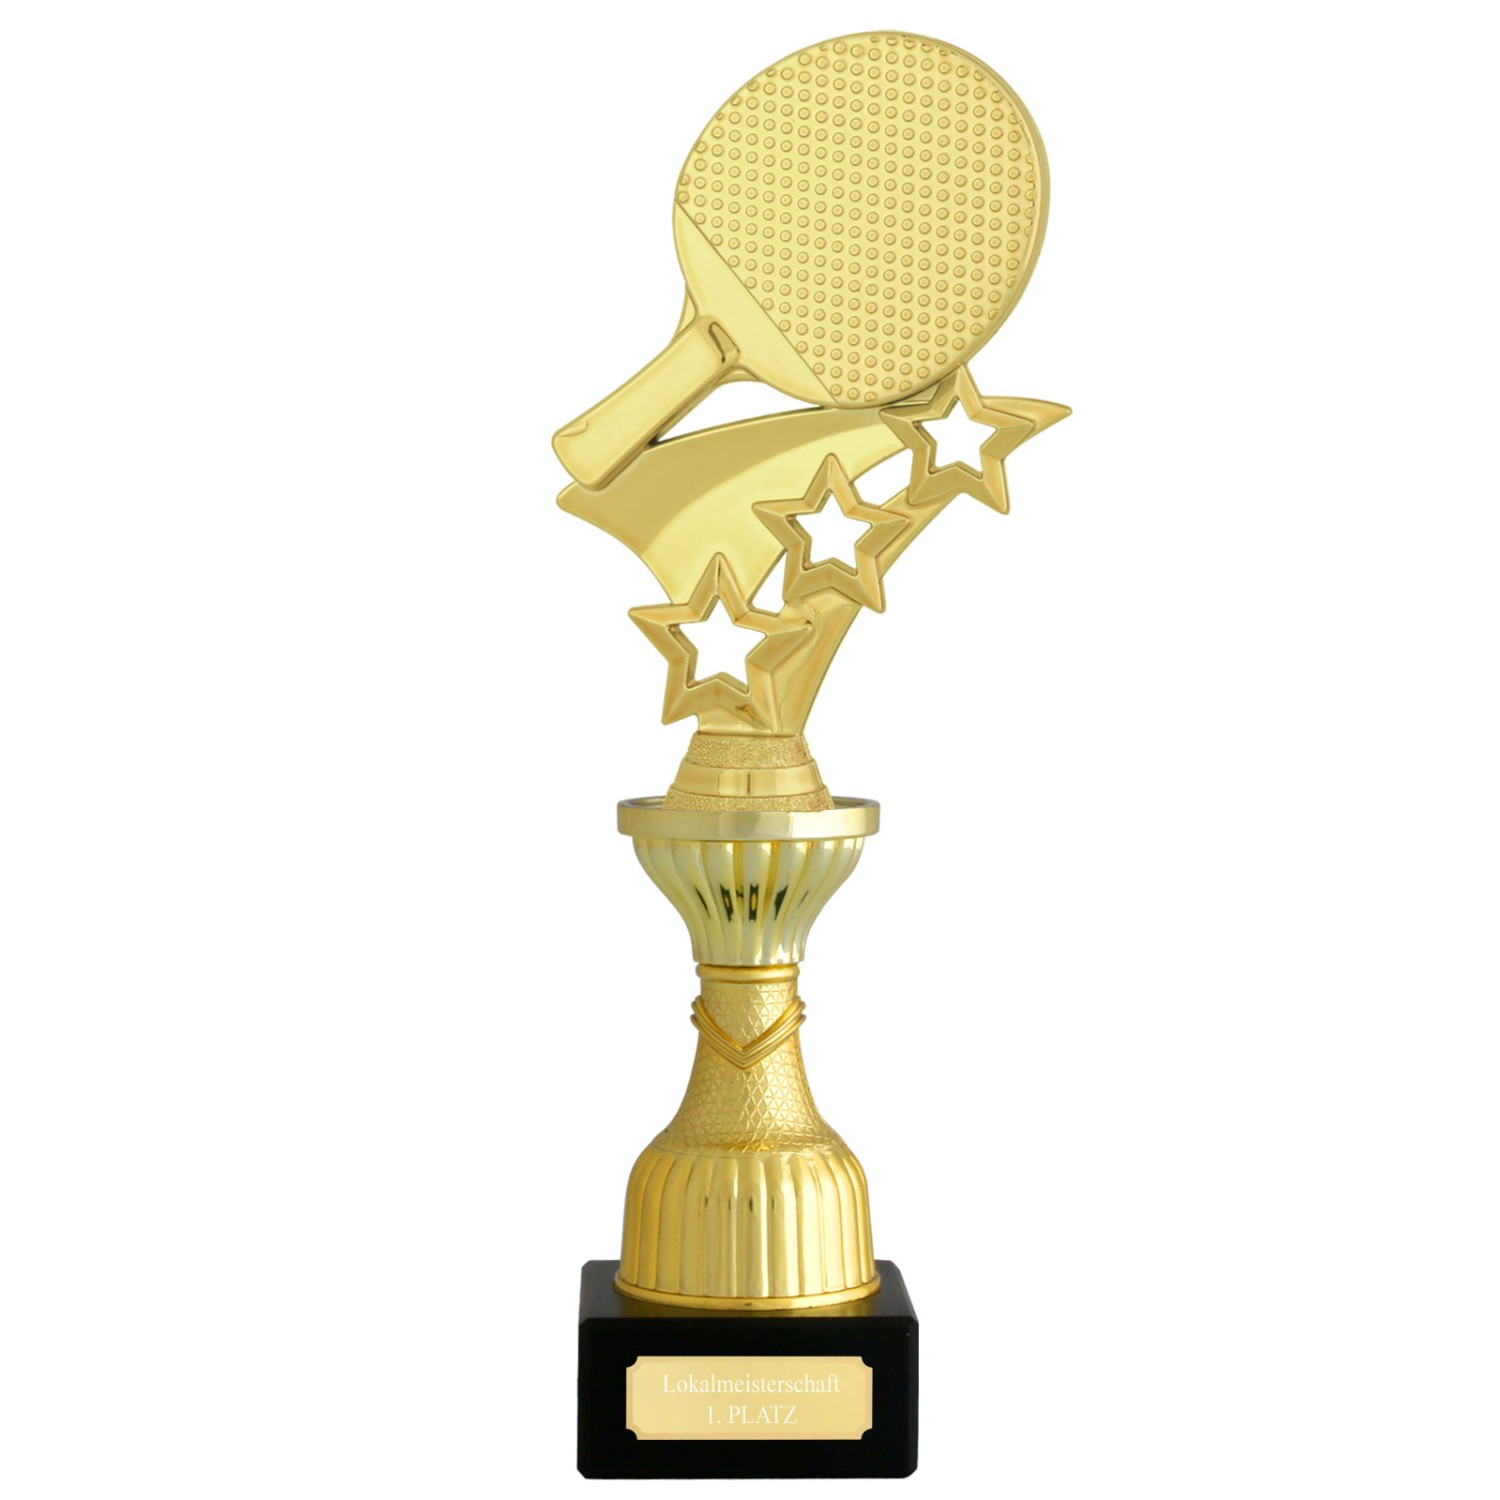 Pokal Tischtennis CERGY gold mit Gravur (Größe: S 21 cm hoch)